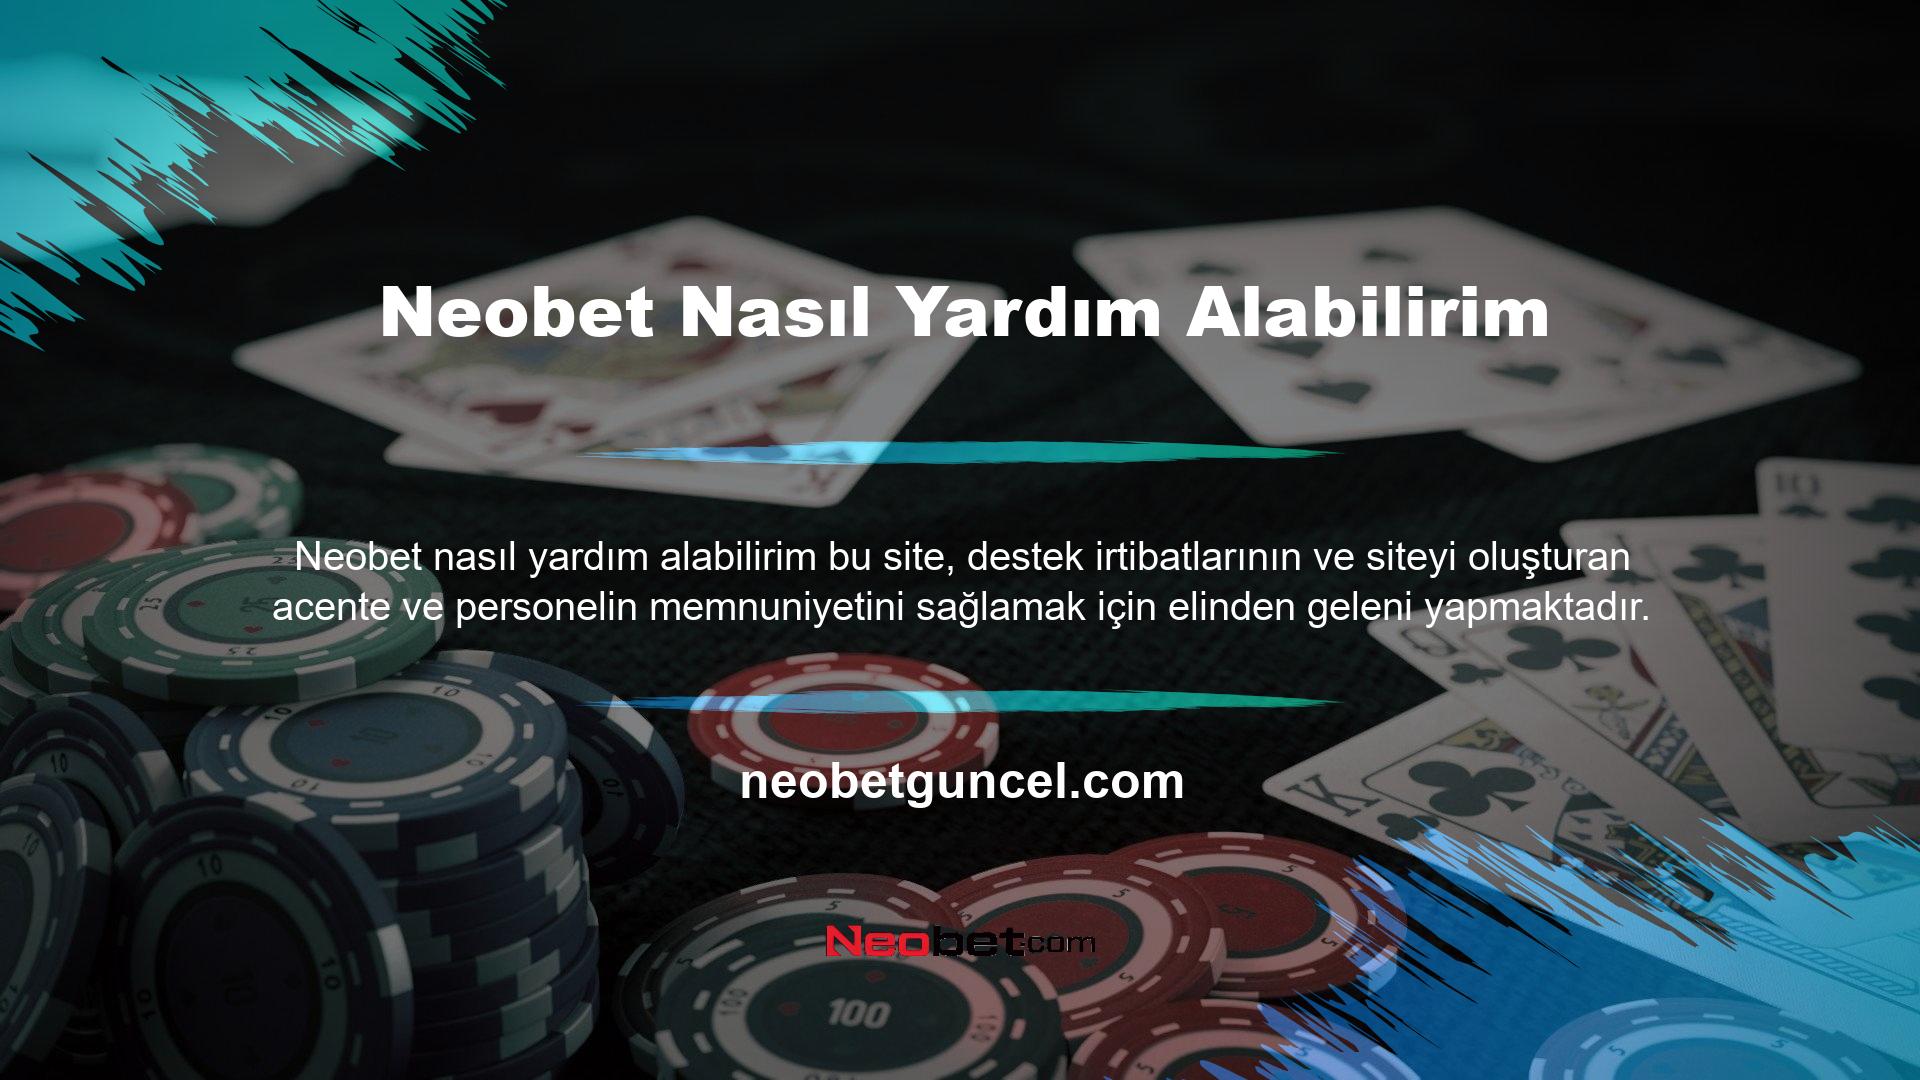 Neobet Türkçe konuşan personeli ve yardım hattı temsilcilerine kolayca erişilebildiği için bu, yasa dışı casino siteleri arasında nadir görülen durumlardan biridir